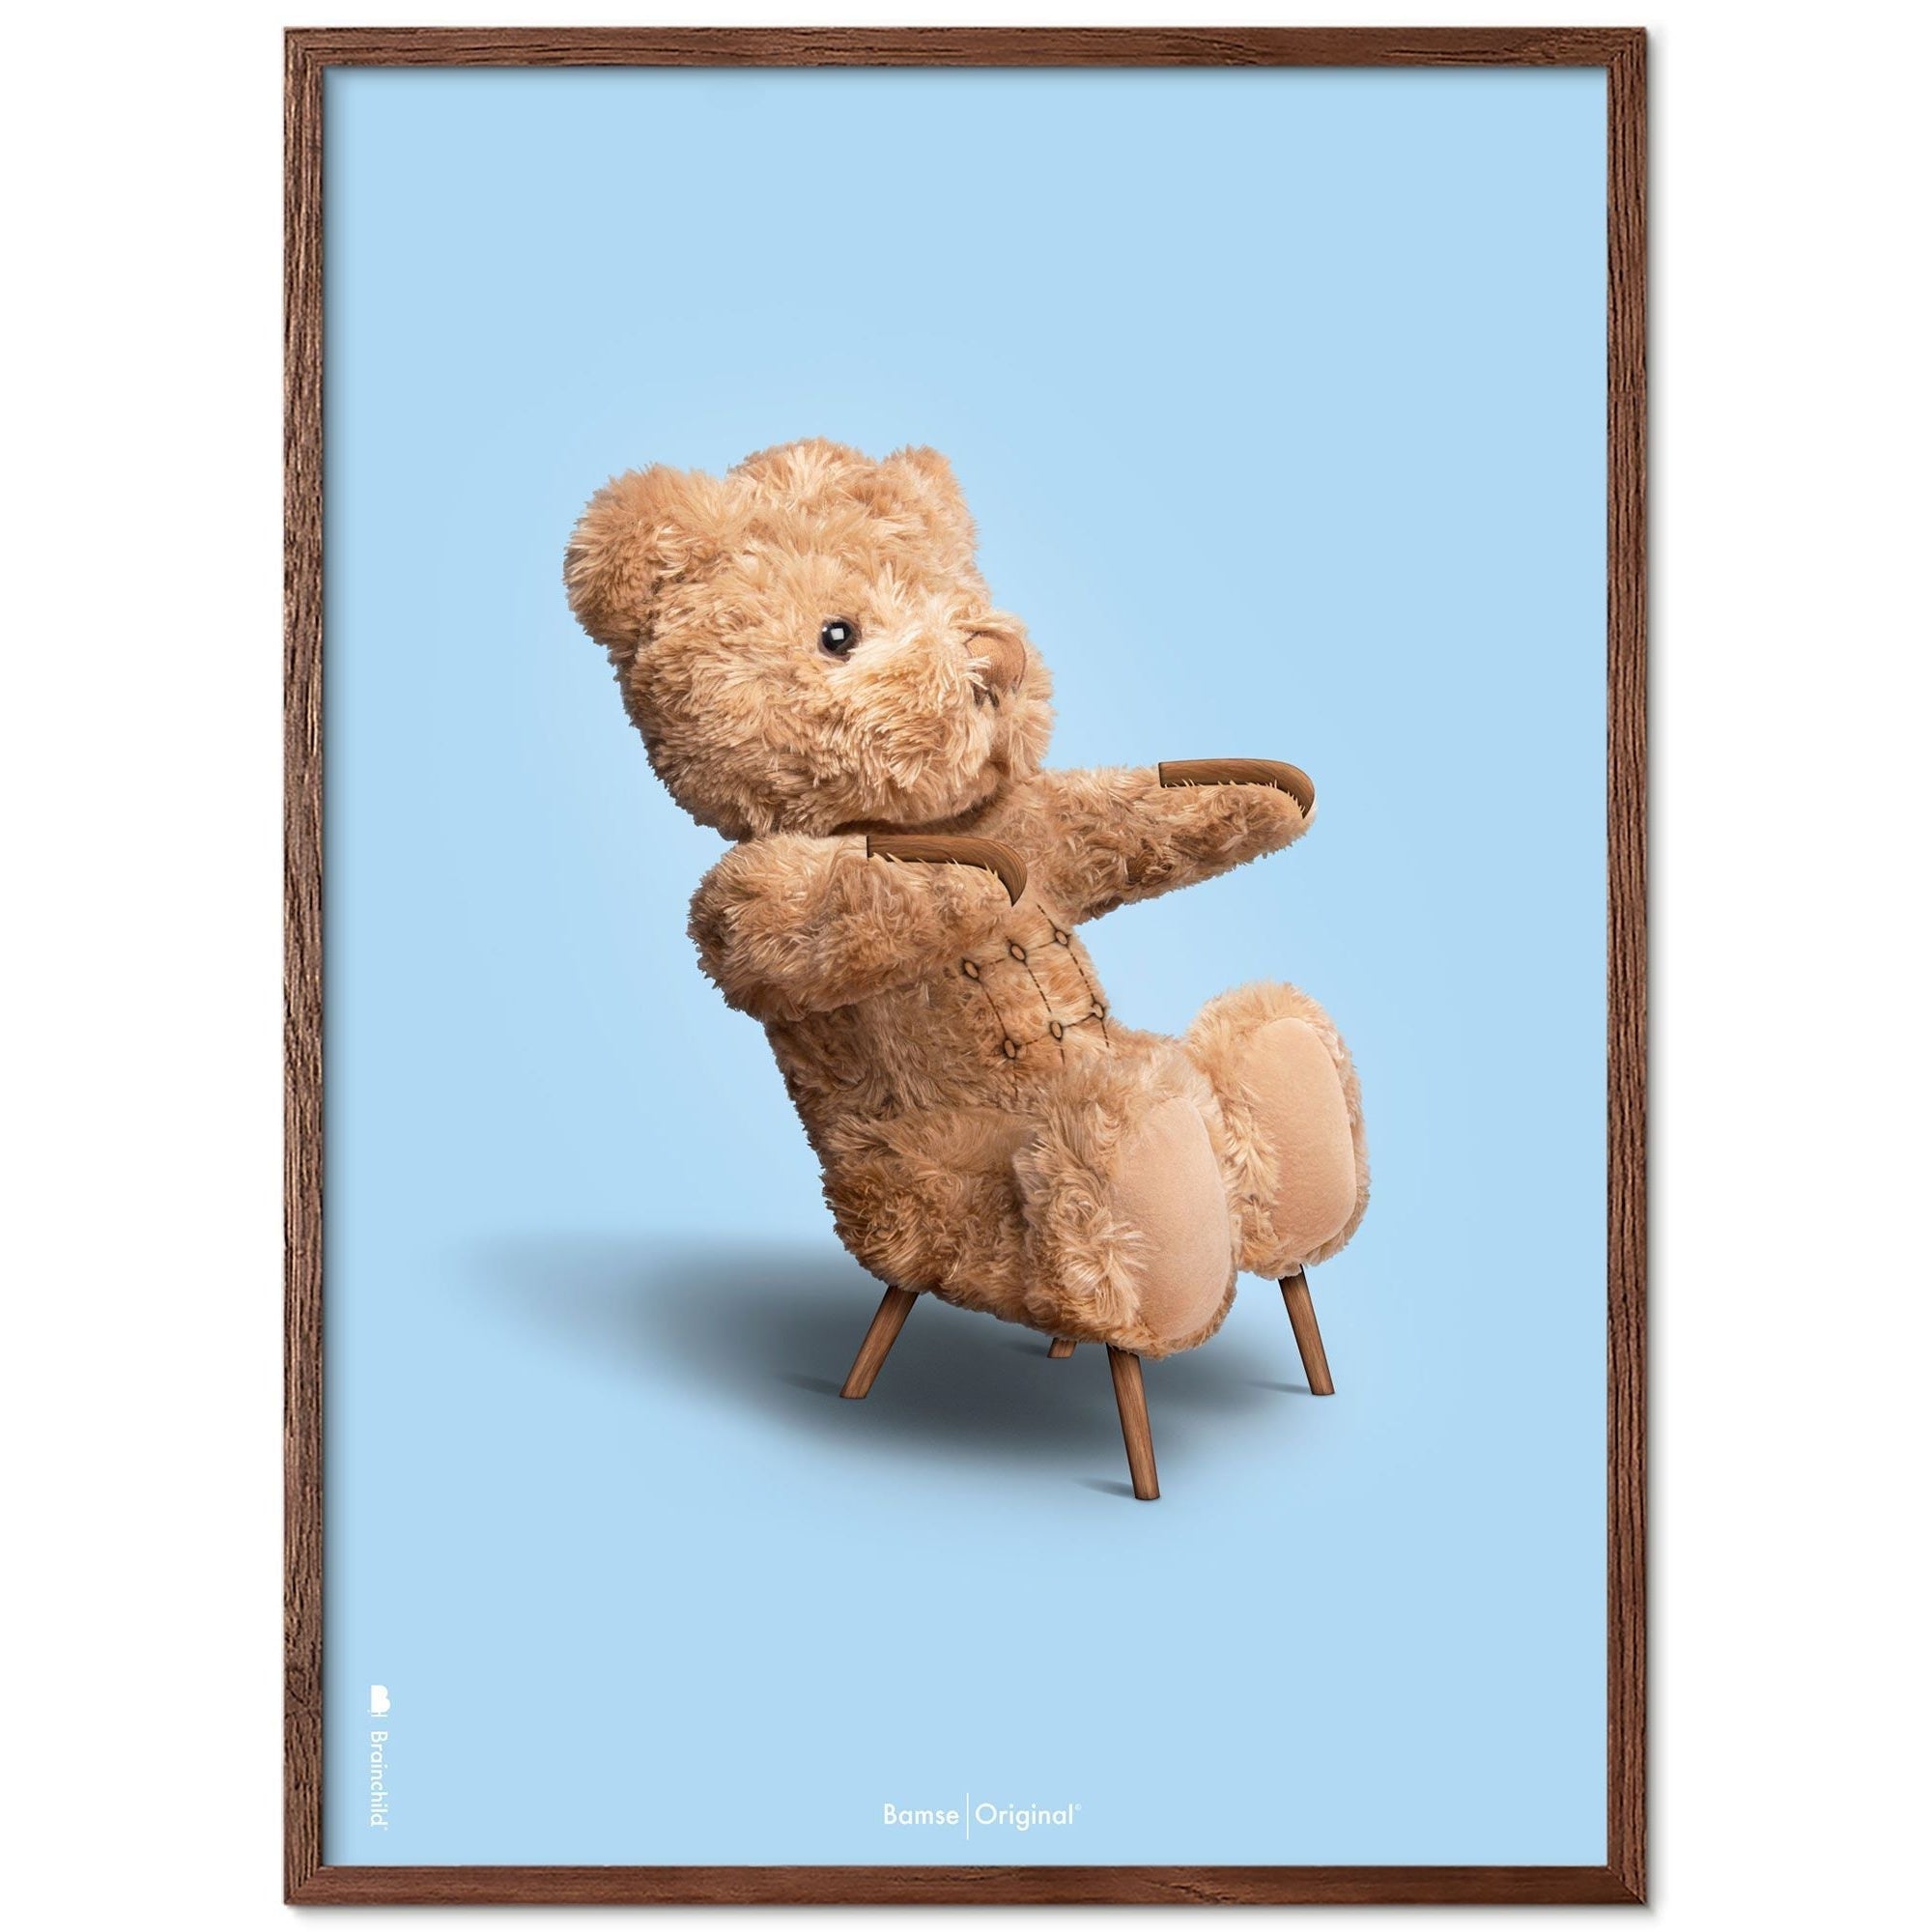 Brainchild Teddy Bear Classic plakát s tmavým dřevem rám Ram A5, světle modré pozadí